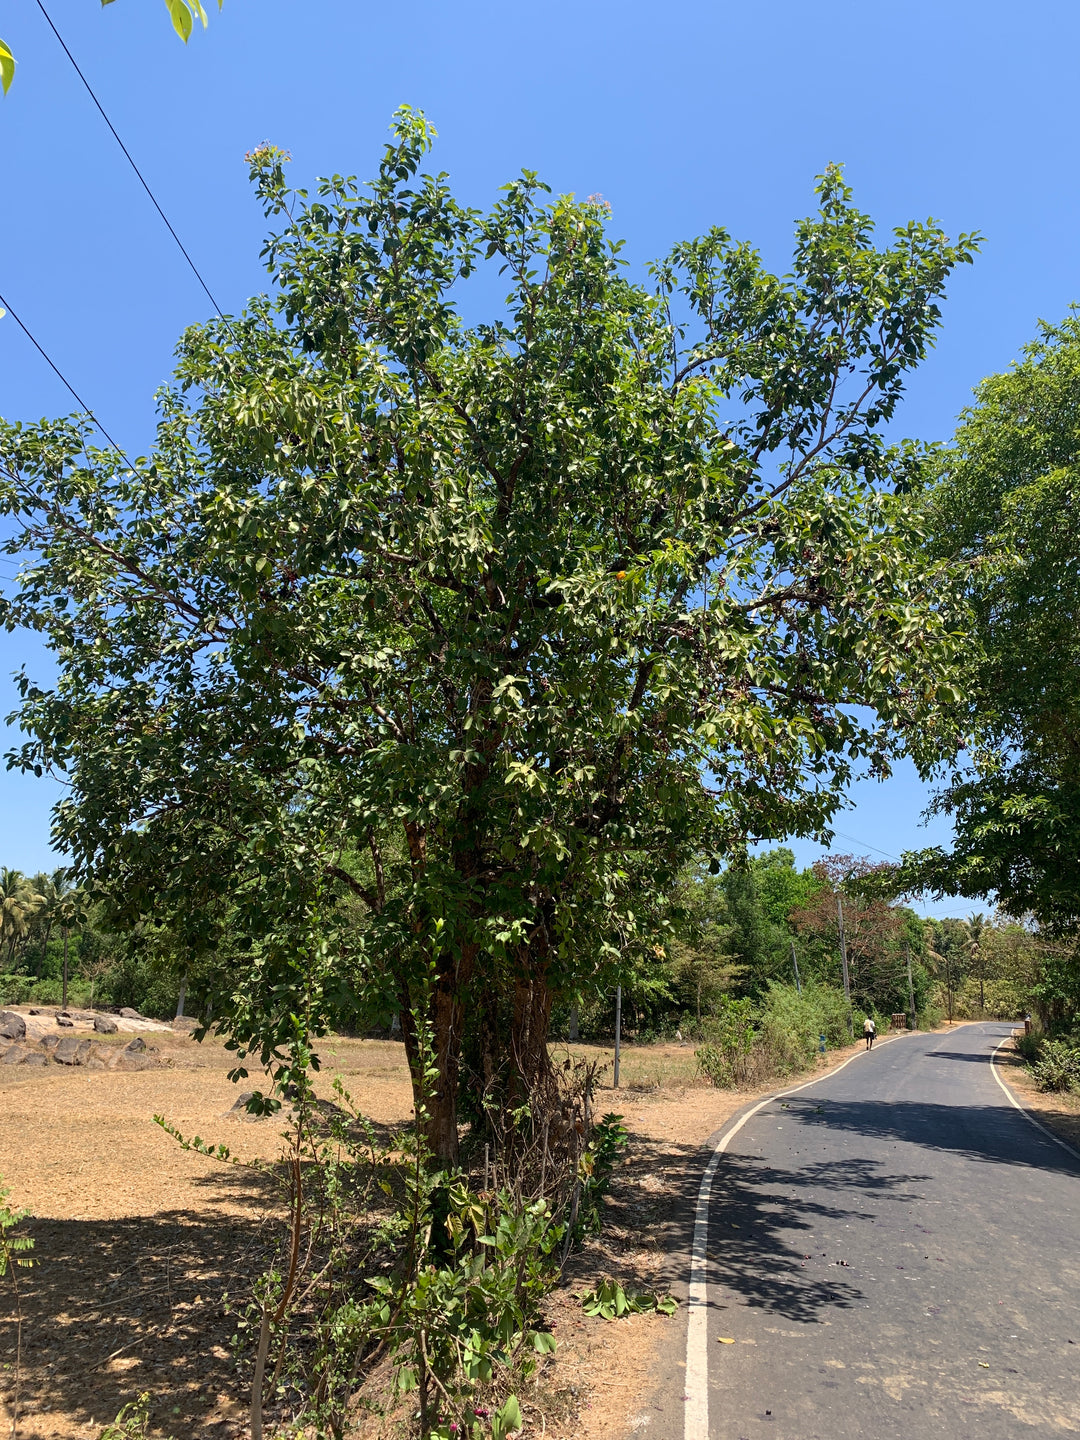 Jamun Tree